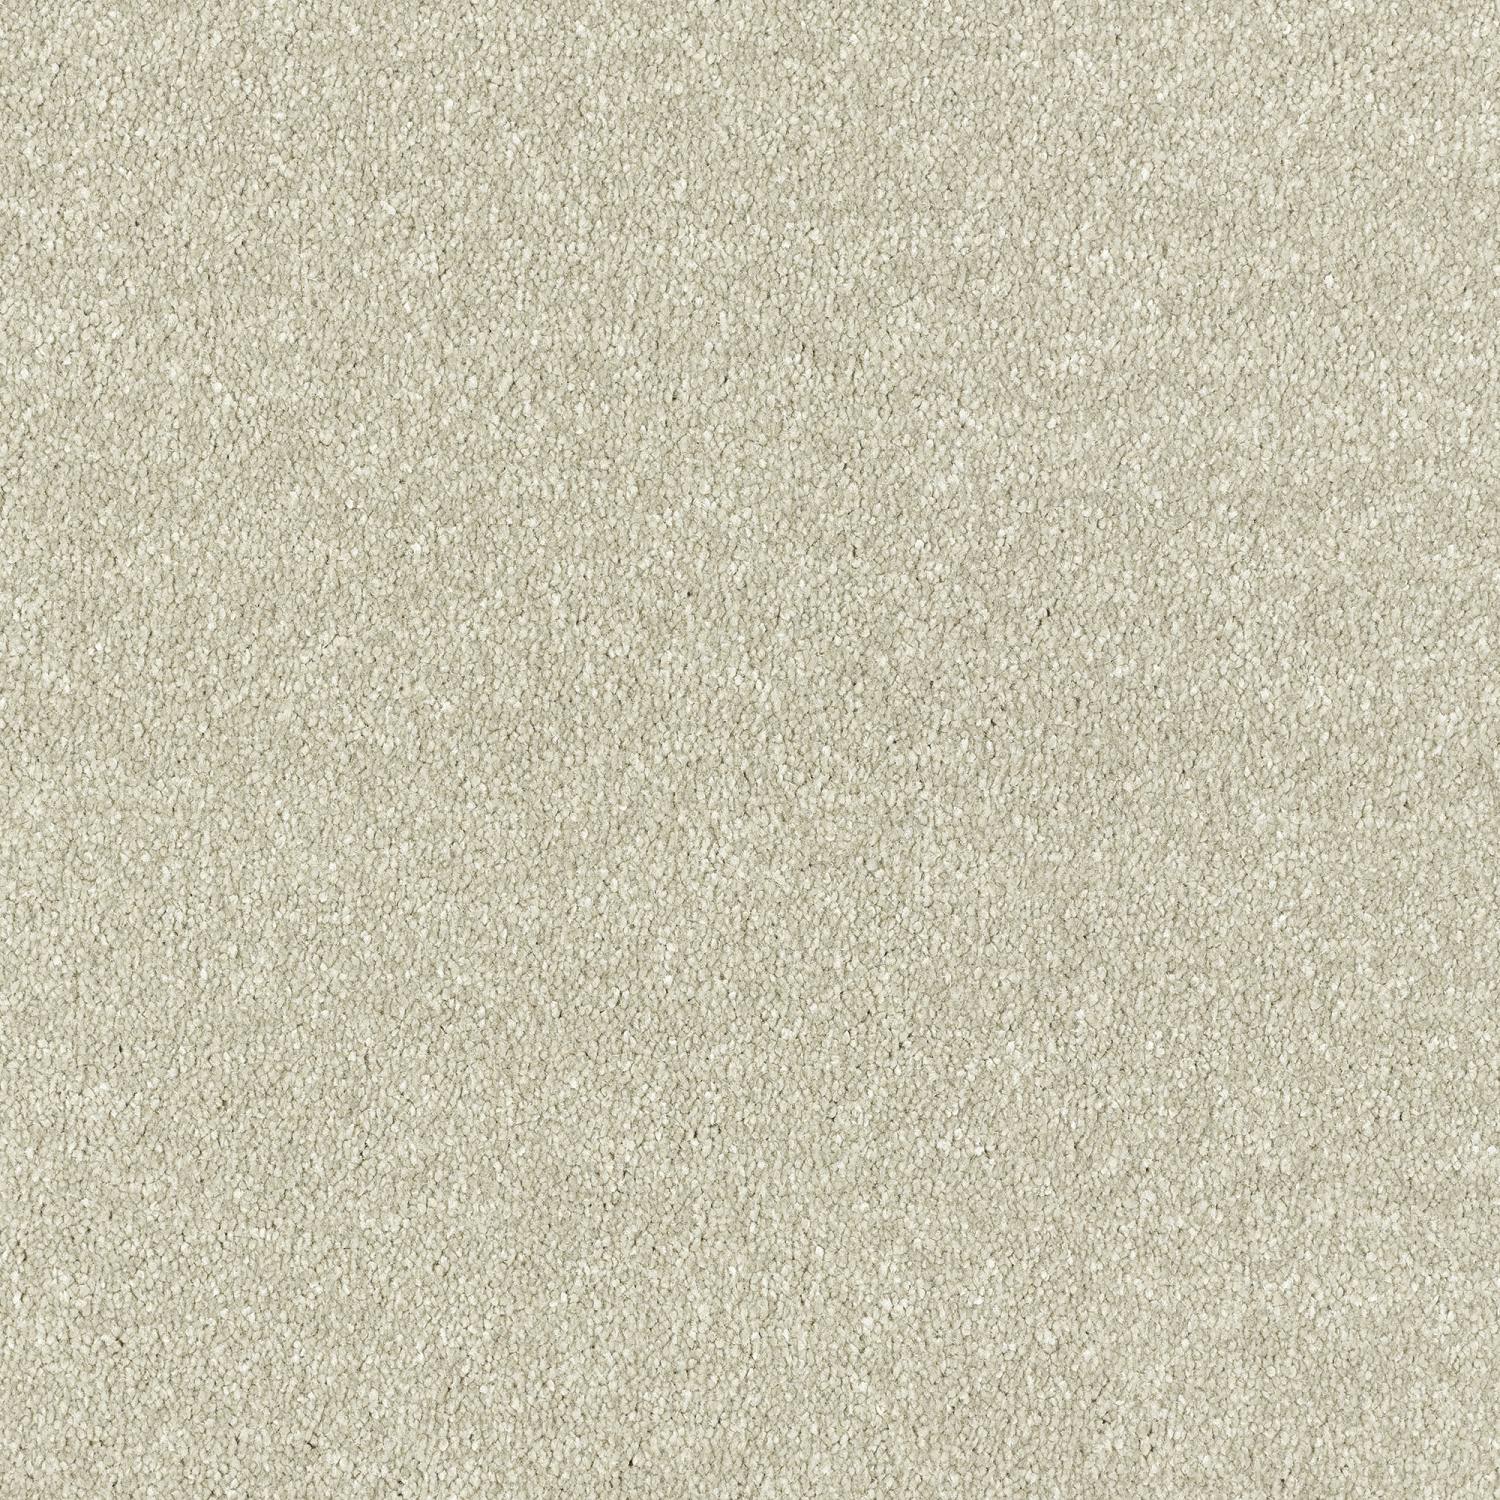 Stainfree Maximus Saxony Carpet - Parchment